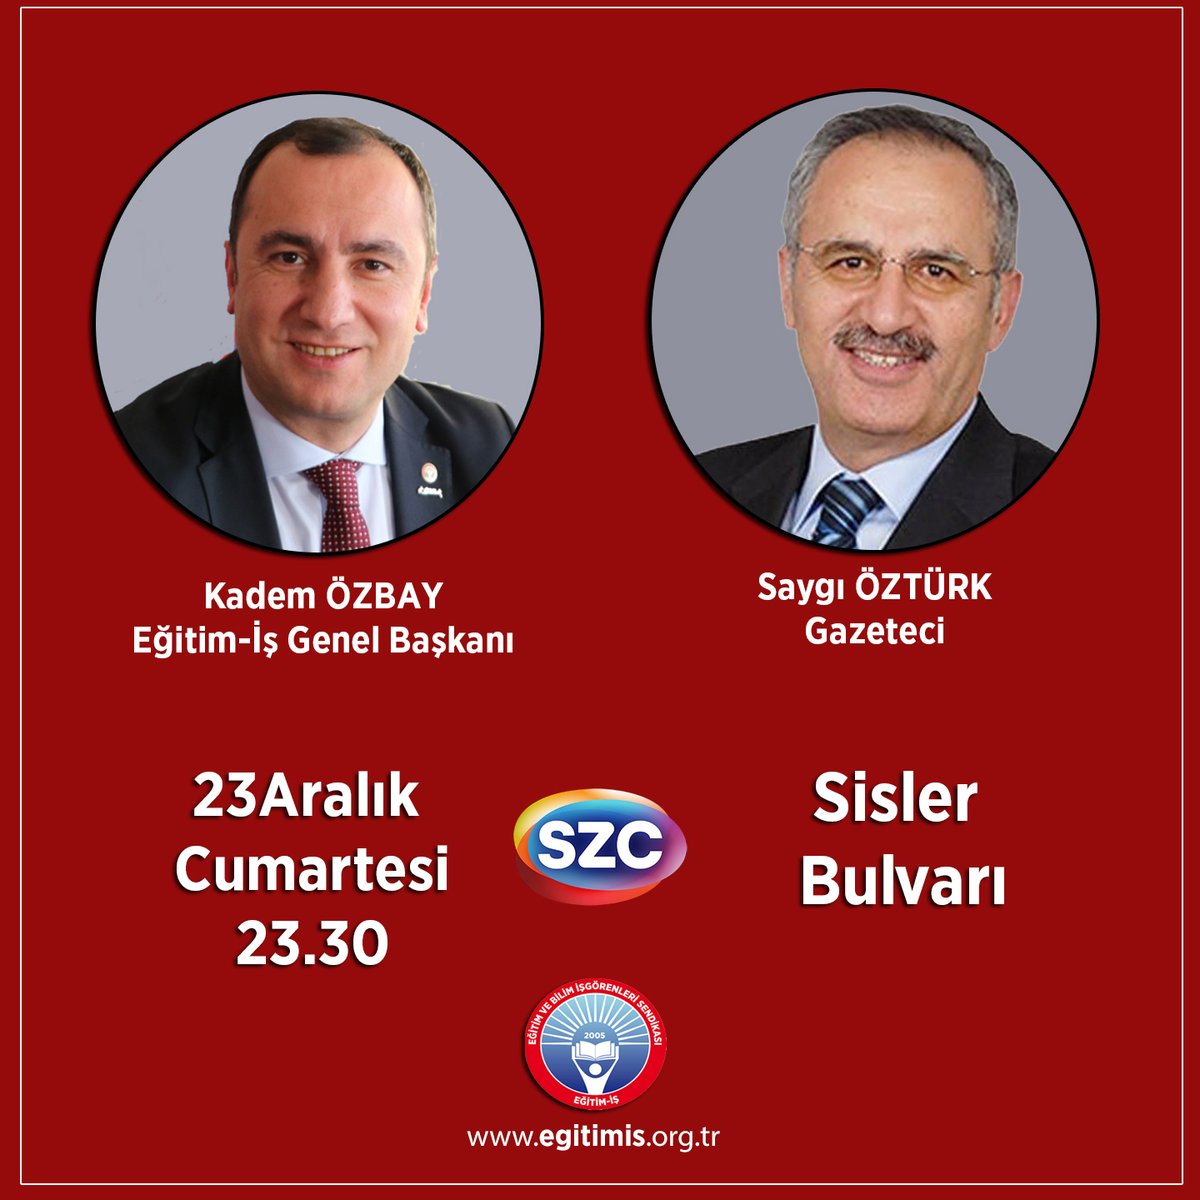 Genel Başkanımız Kadem Özbay, 🗓️ bu akşam (23 Aralık Cumartesi) ⏰ saat 23.30'da 📺 Sözcü Televizyonunda yayınlanacak Sisler bulvarı programında Saygı Öztürk'ün canlı yayın konuğu olacaktır. @kademozbay_ @szctelevizyon @saygi_ozturk